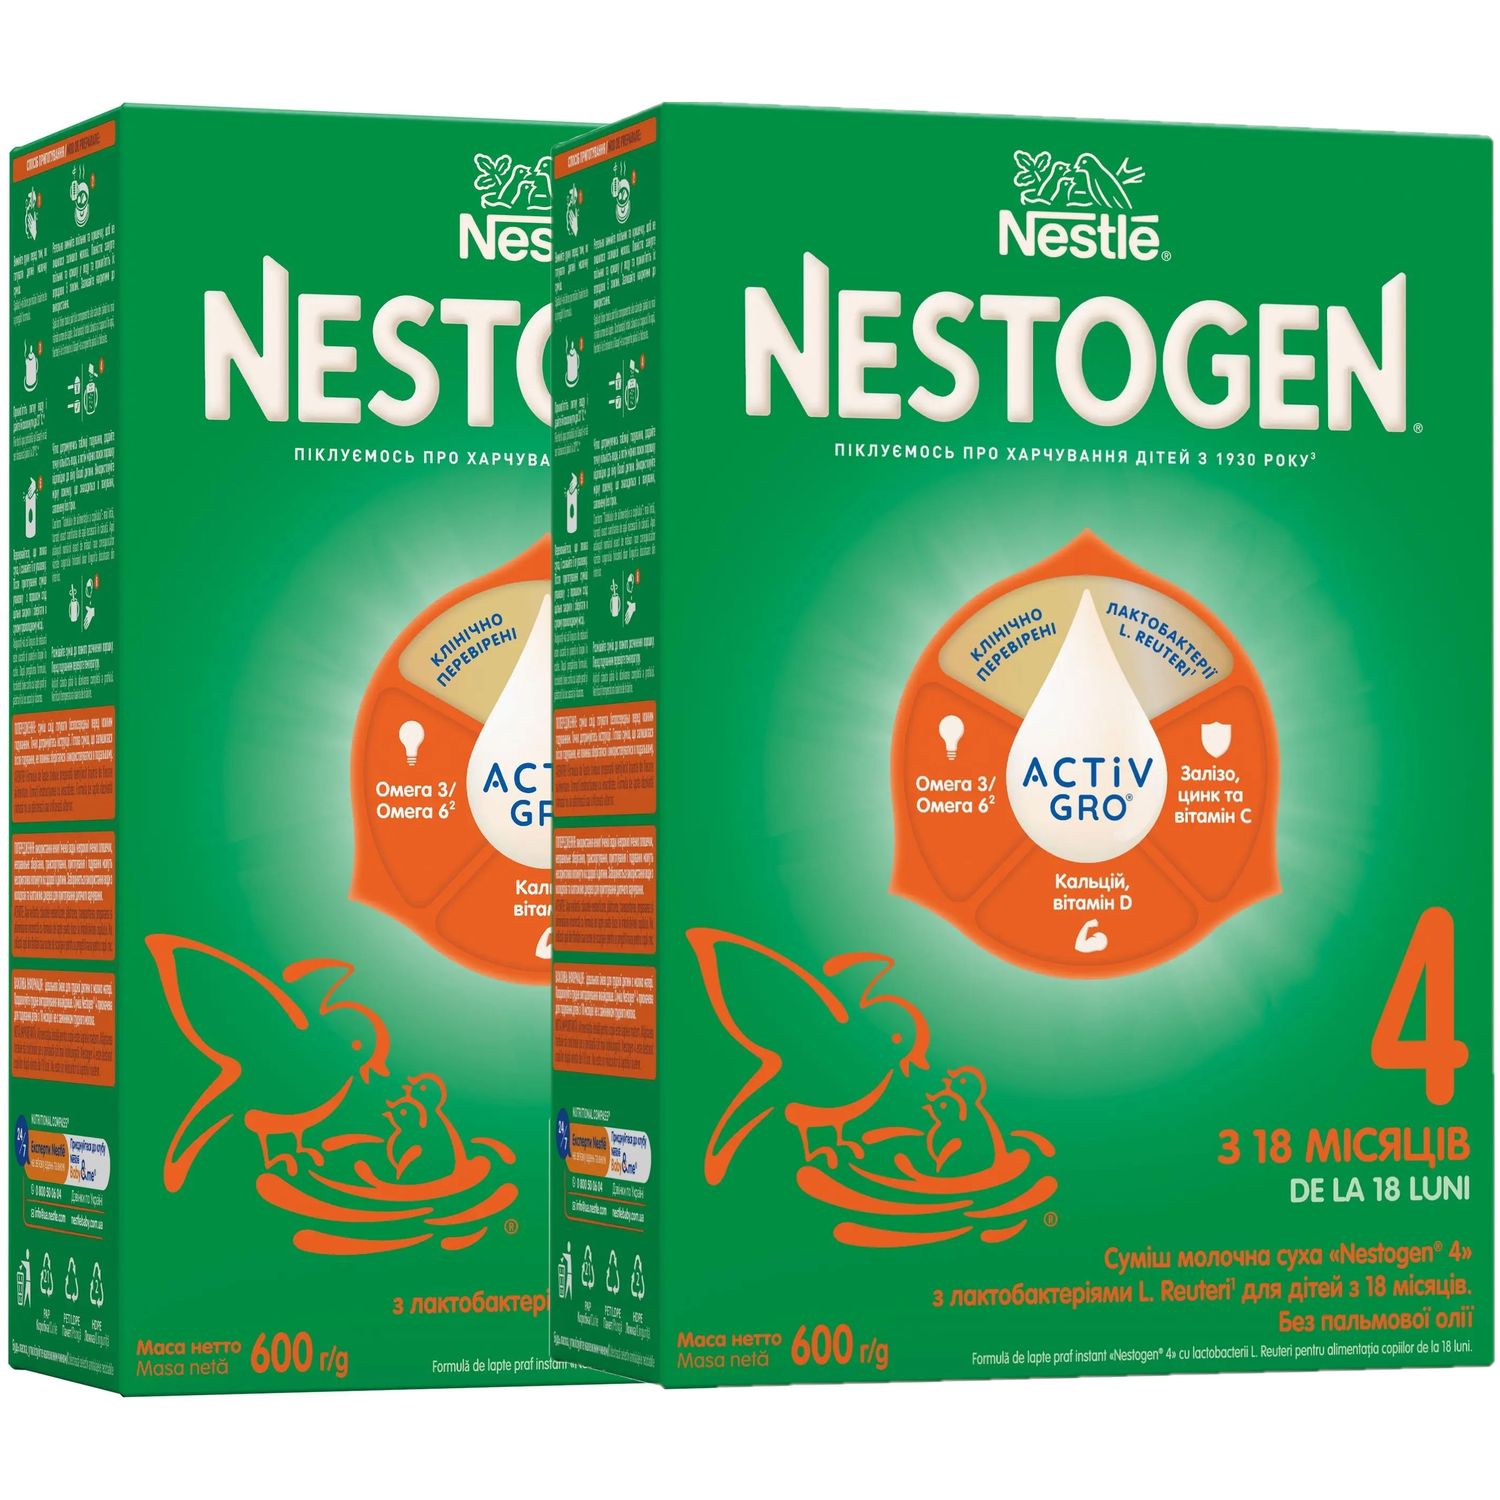 Сухая молочная смесь Nestogen 4 с лактобактериями L. Reuteri 1.2 кг (2 шт. по 600 г) - фото 1